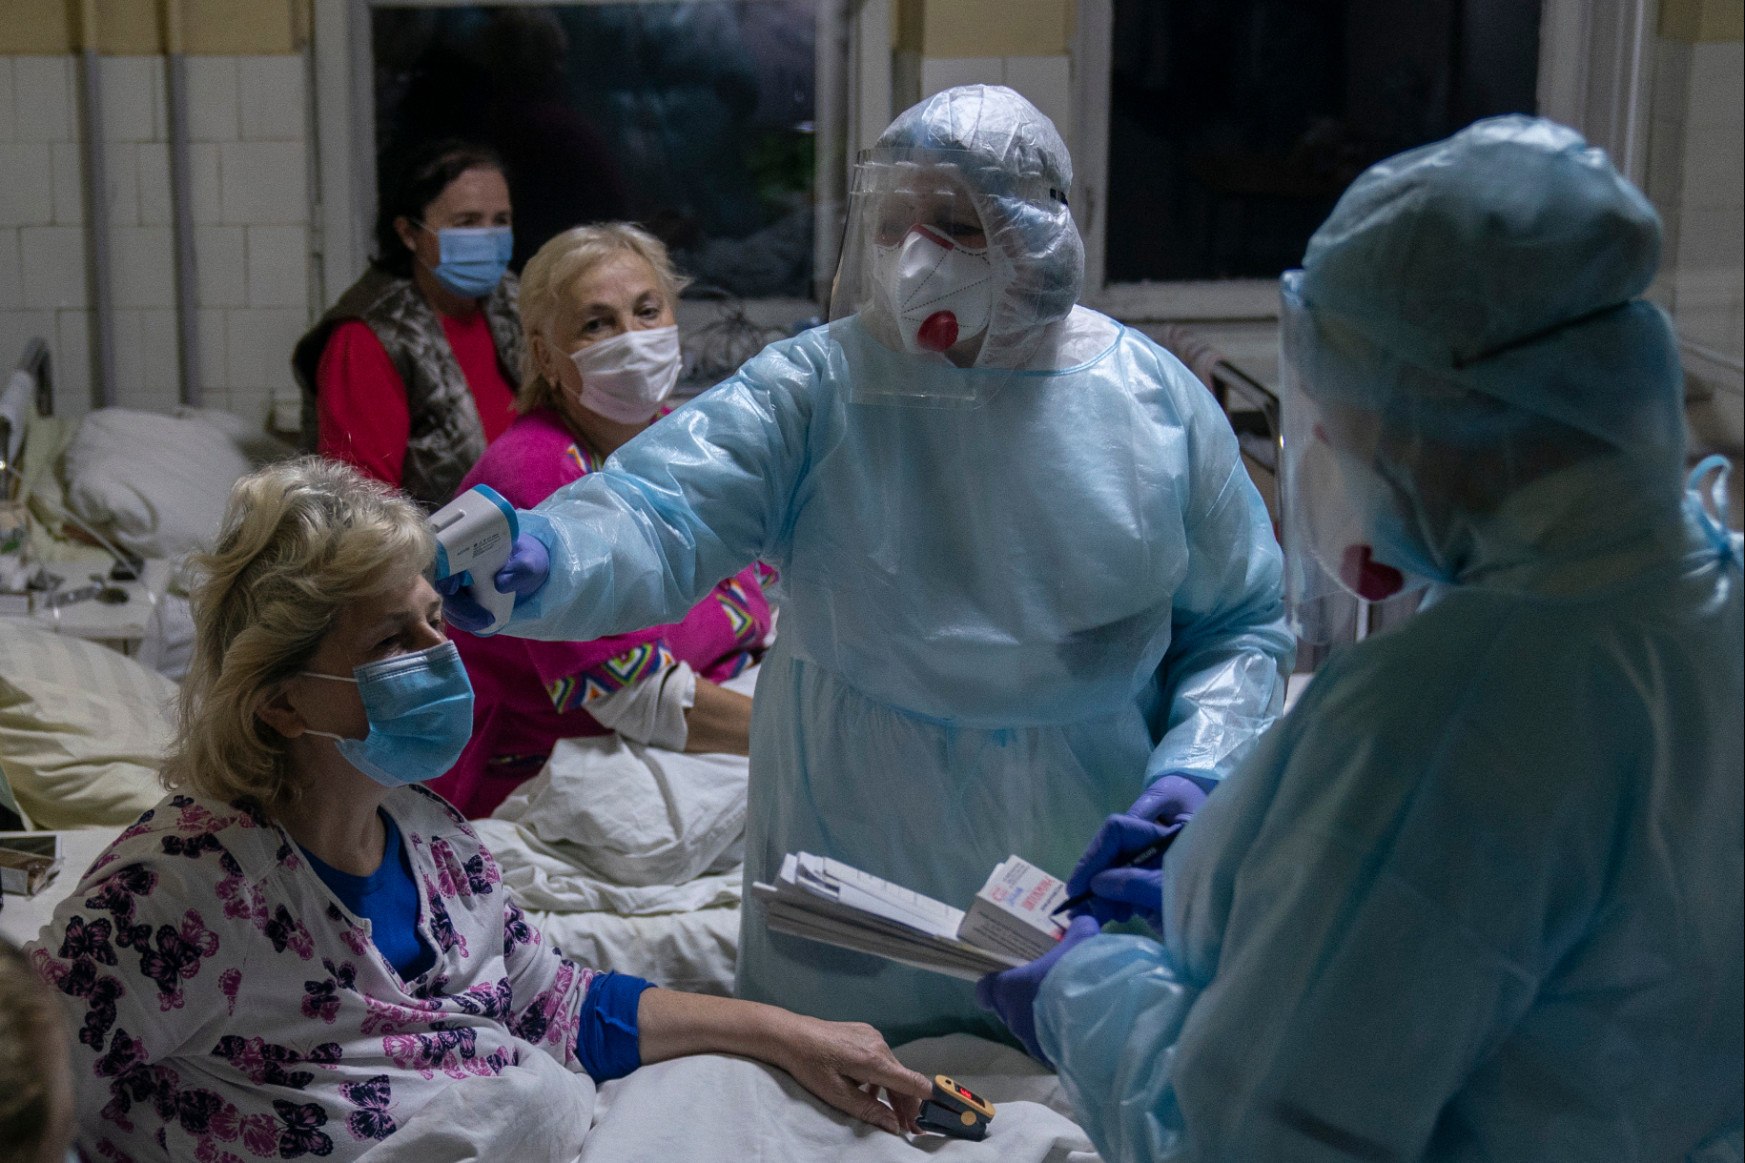 Tele vannak Róma kórházai, szállodákba szállítják a betegeket